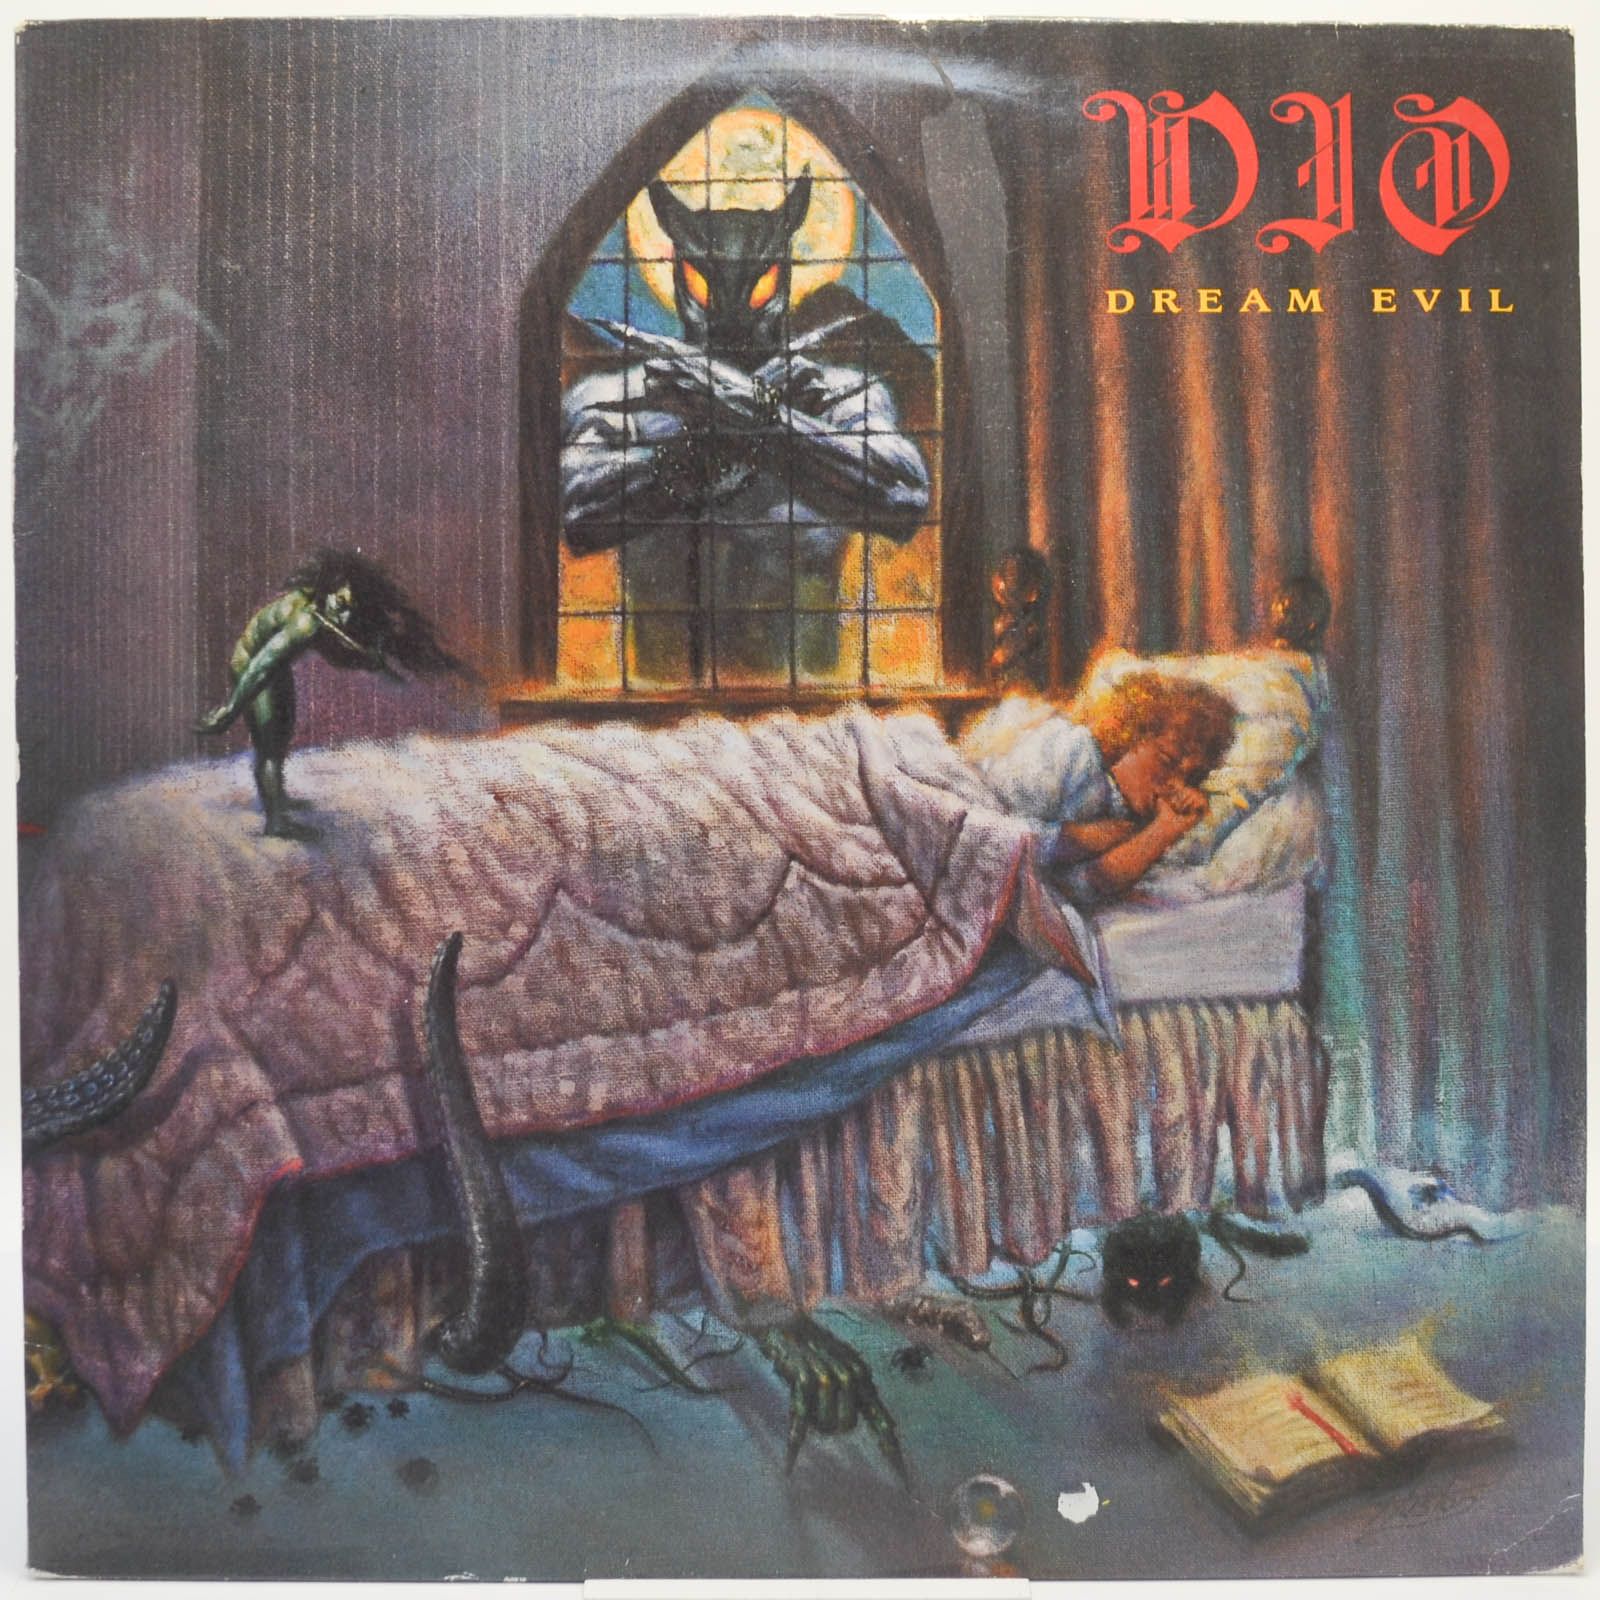 Dio — Dream Evil, 1987